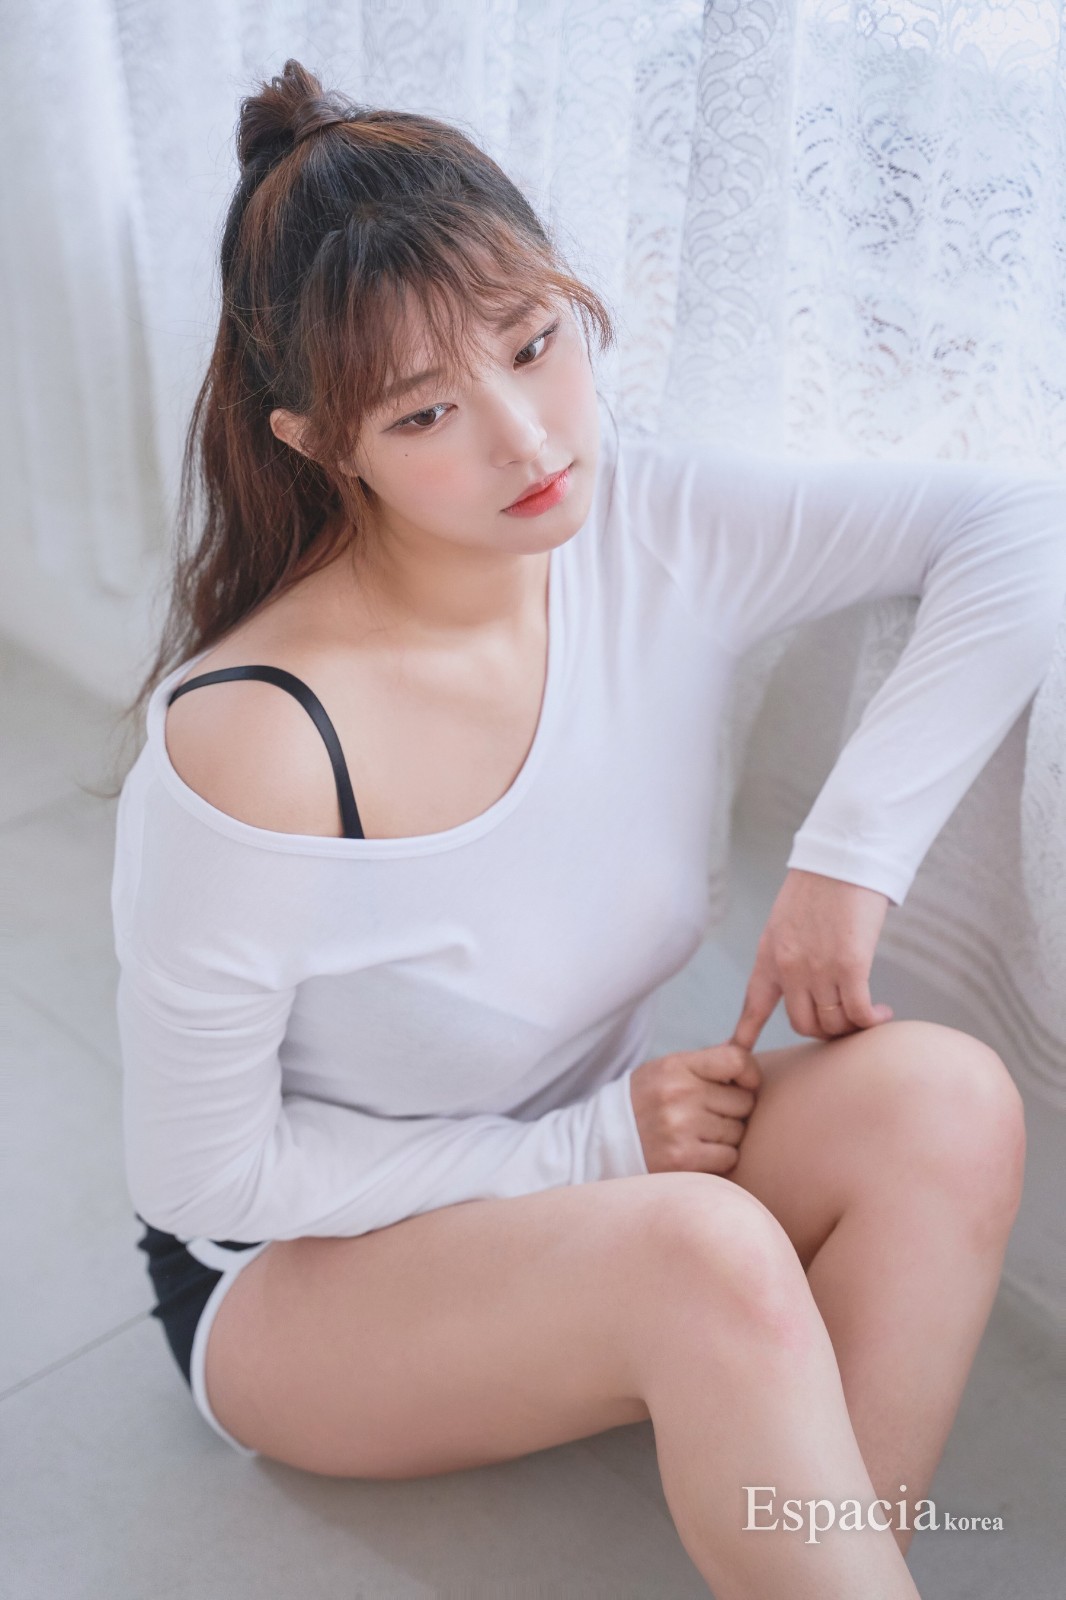 韩国模特美少女召甘平福利图赏 无可挑剔的身材